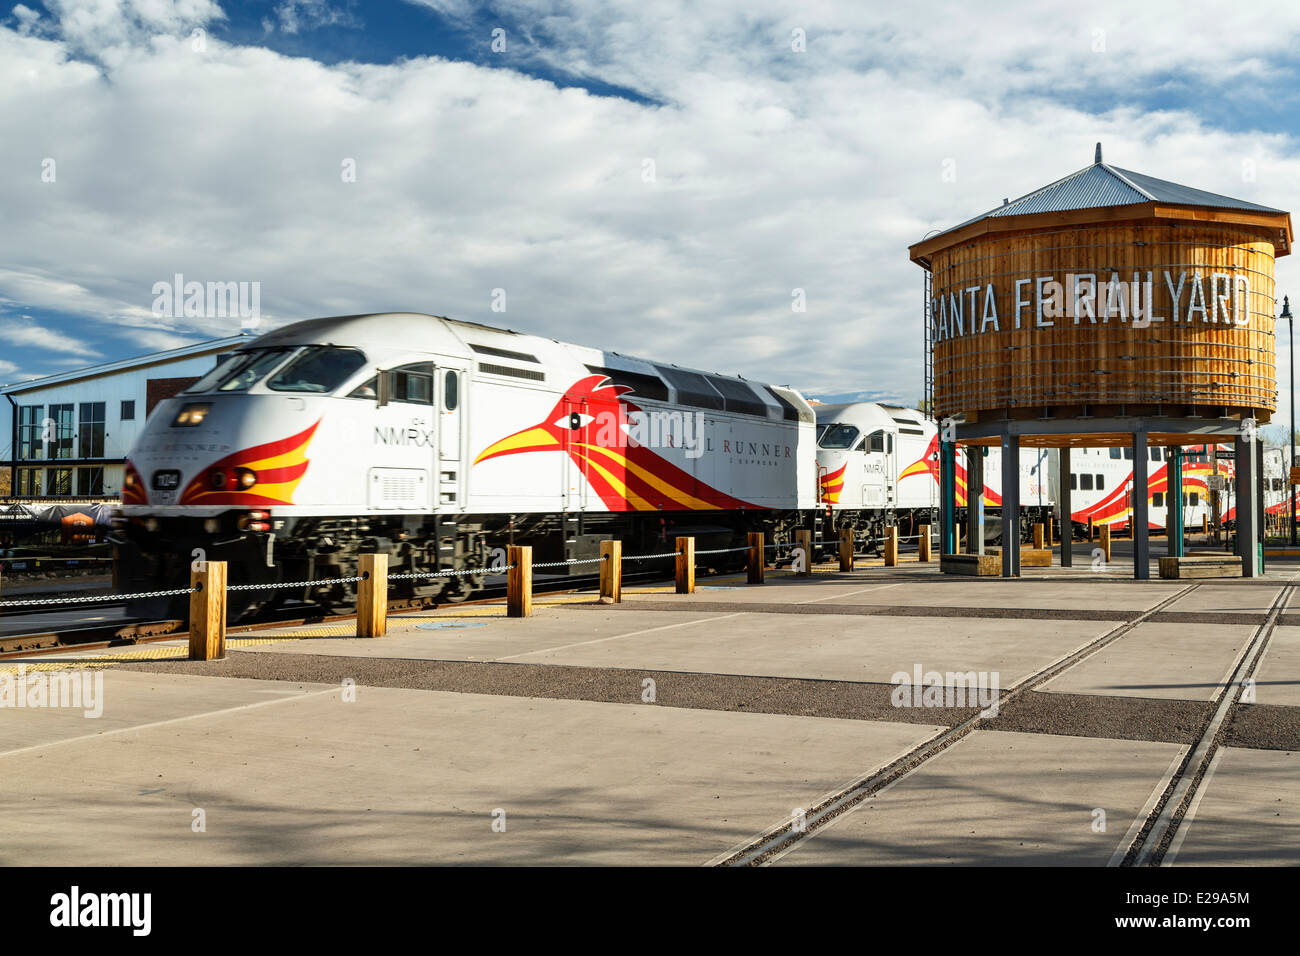 Réservoir d'eau et Railrunner Express commuter train, gare de Santa Fe, Santa Fe, Nouveau Mexique USA Banque D'Images